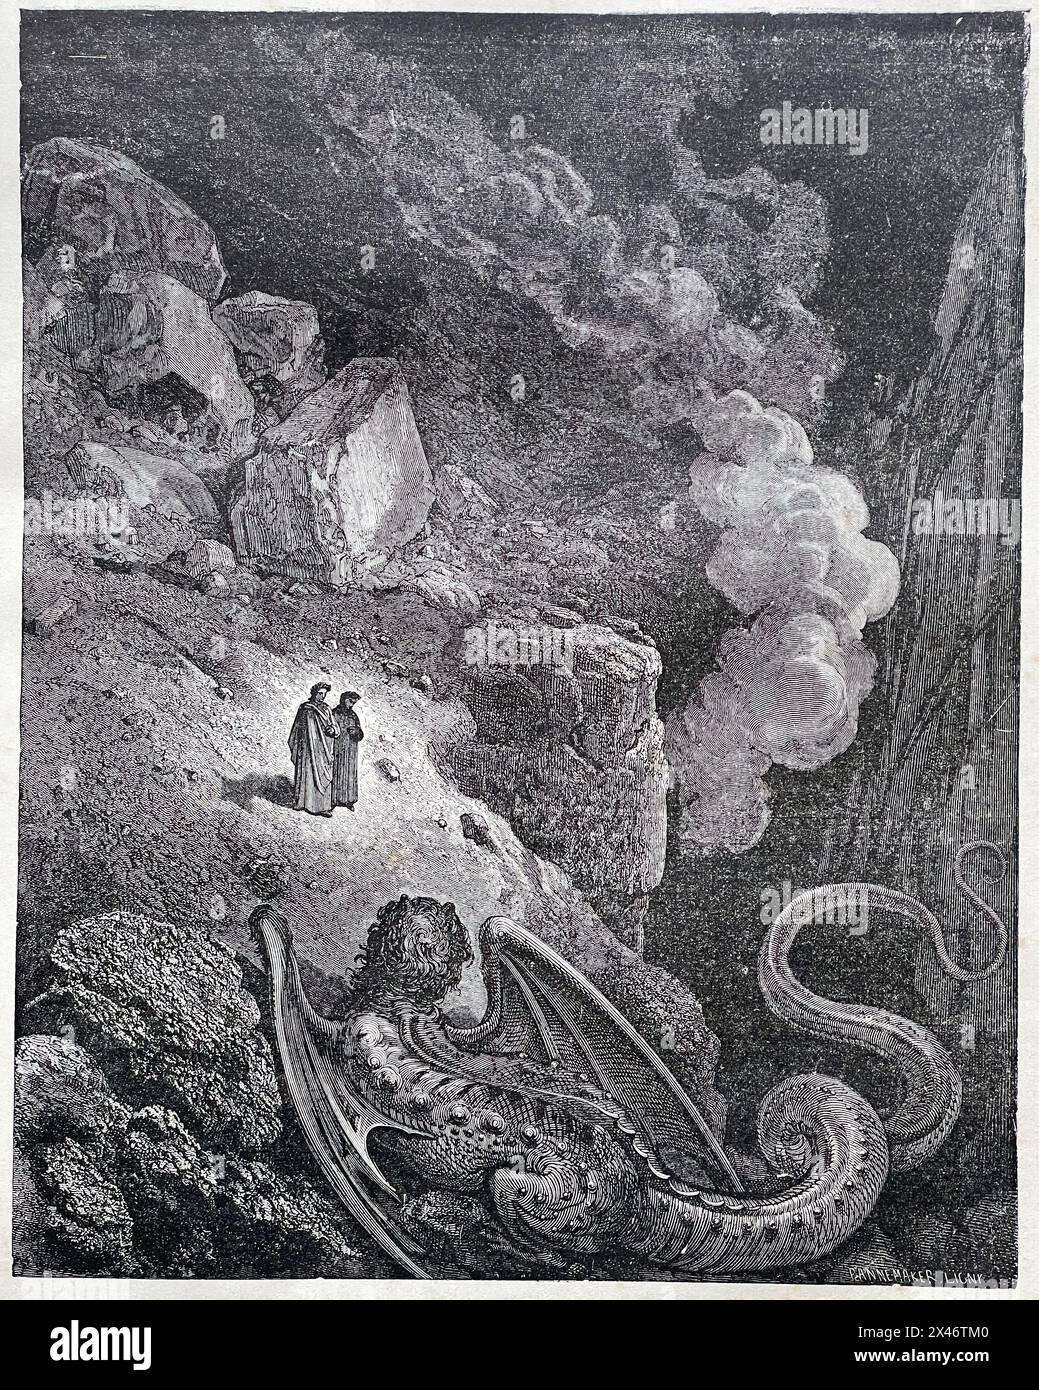 Photo d'une image de la Divine Comédie, Inferno Canto XVII, représentant Virgile et Dante Alighieri observant Géryon. Banque D'Images